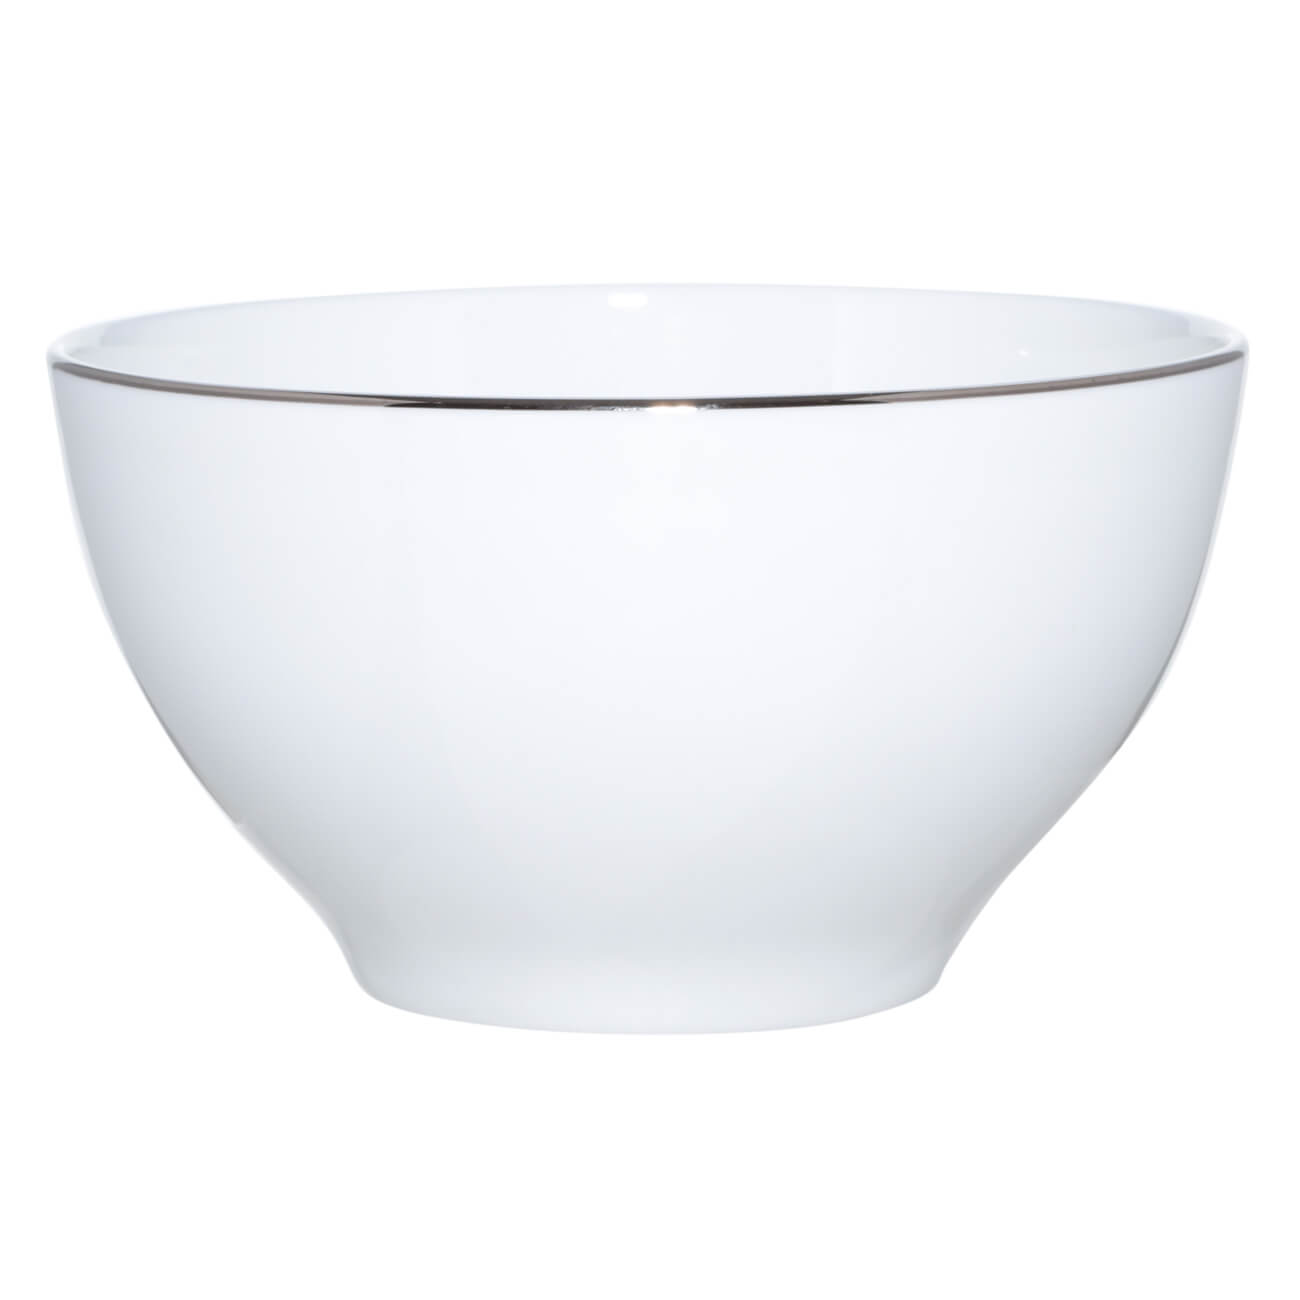 Bowl, 12x6 cm, 2 pieces, porcelain F, white, Ideal silver изображение № 1